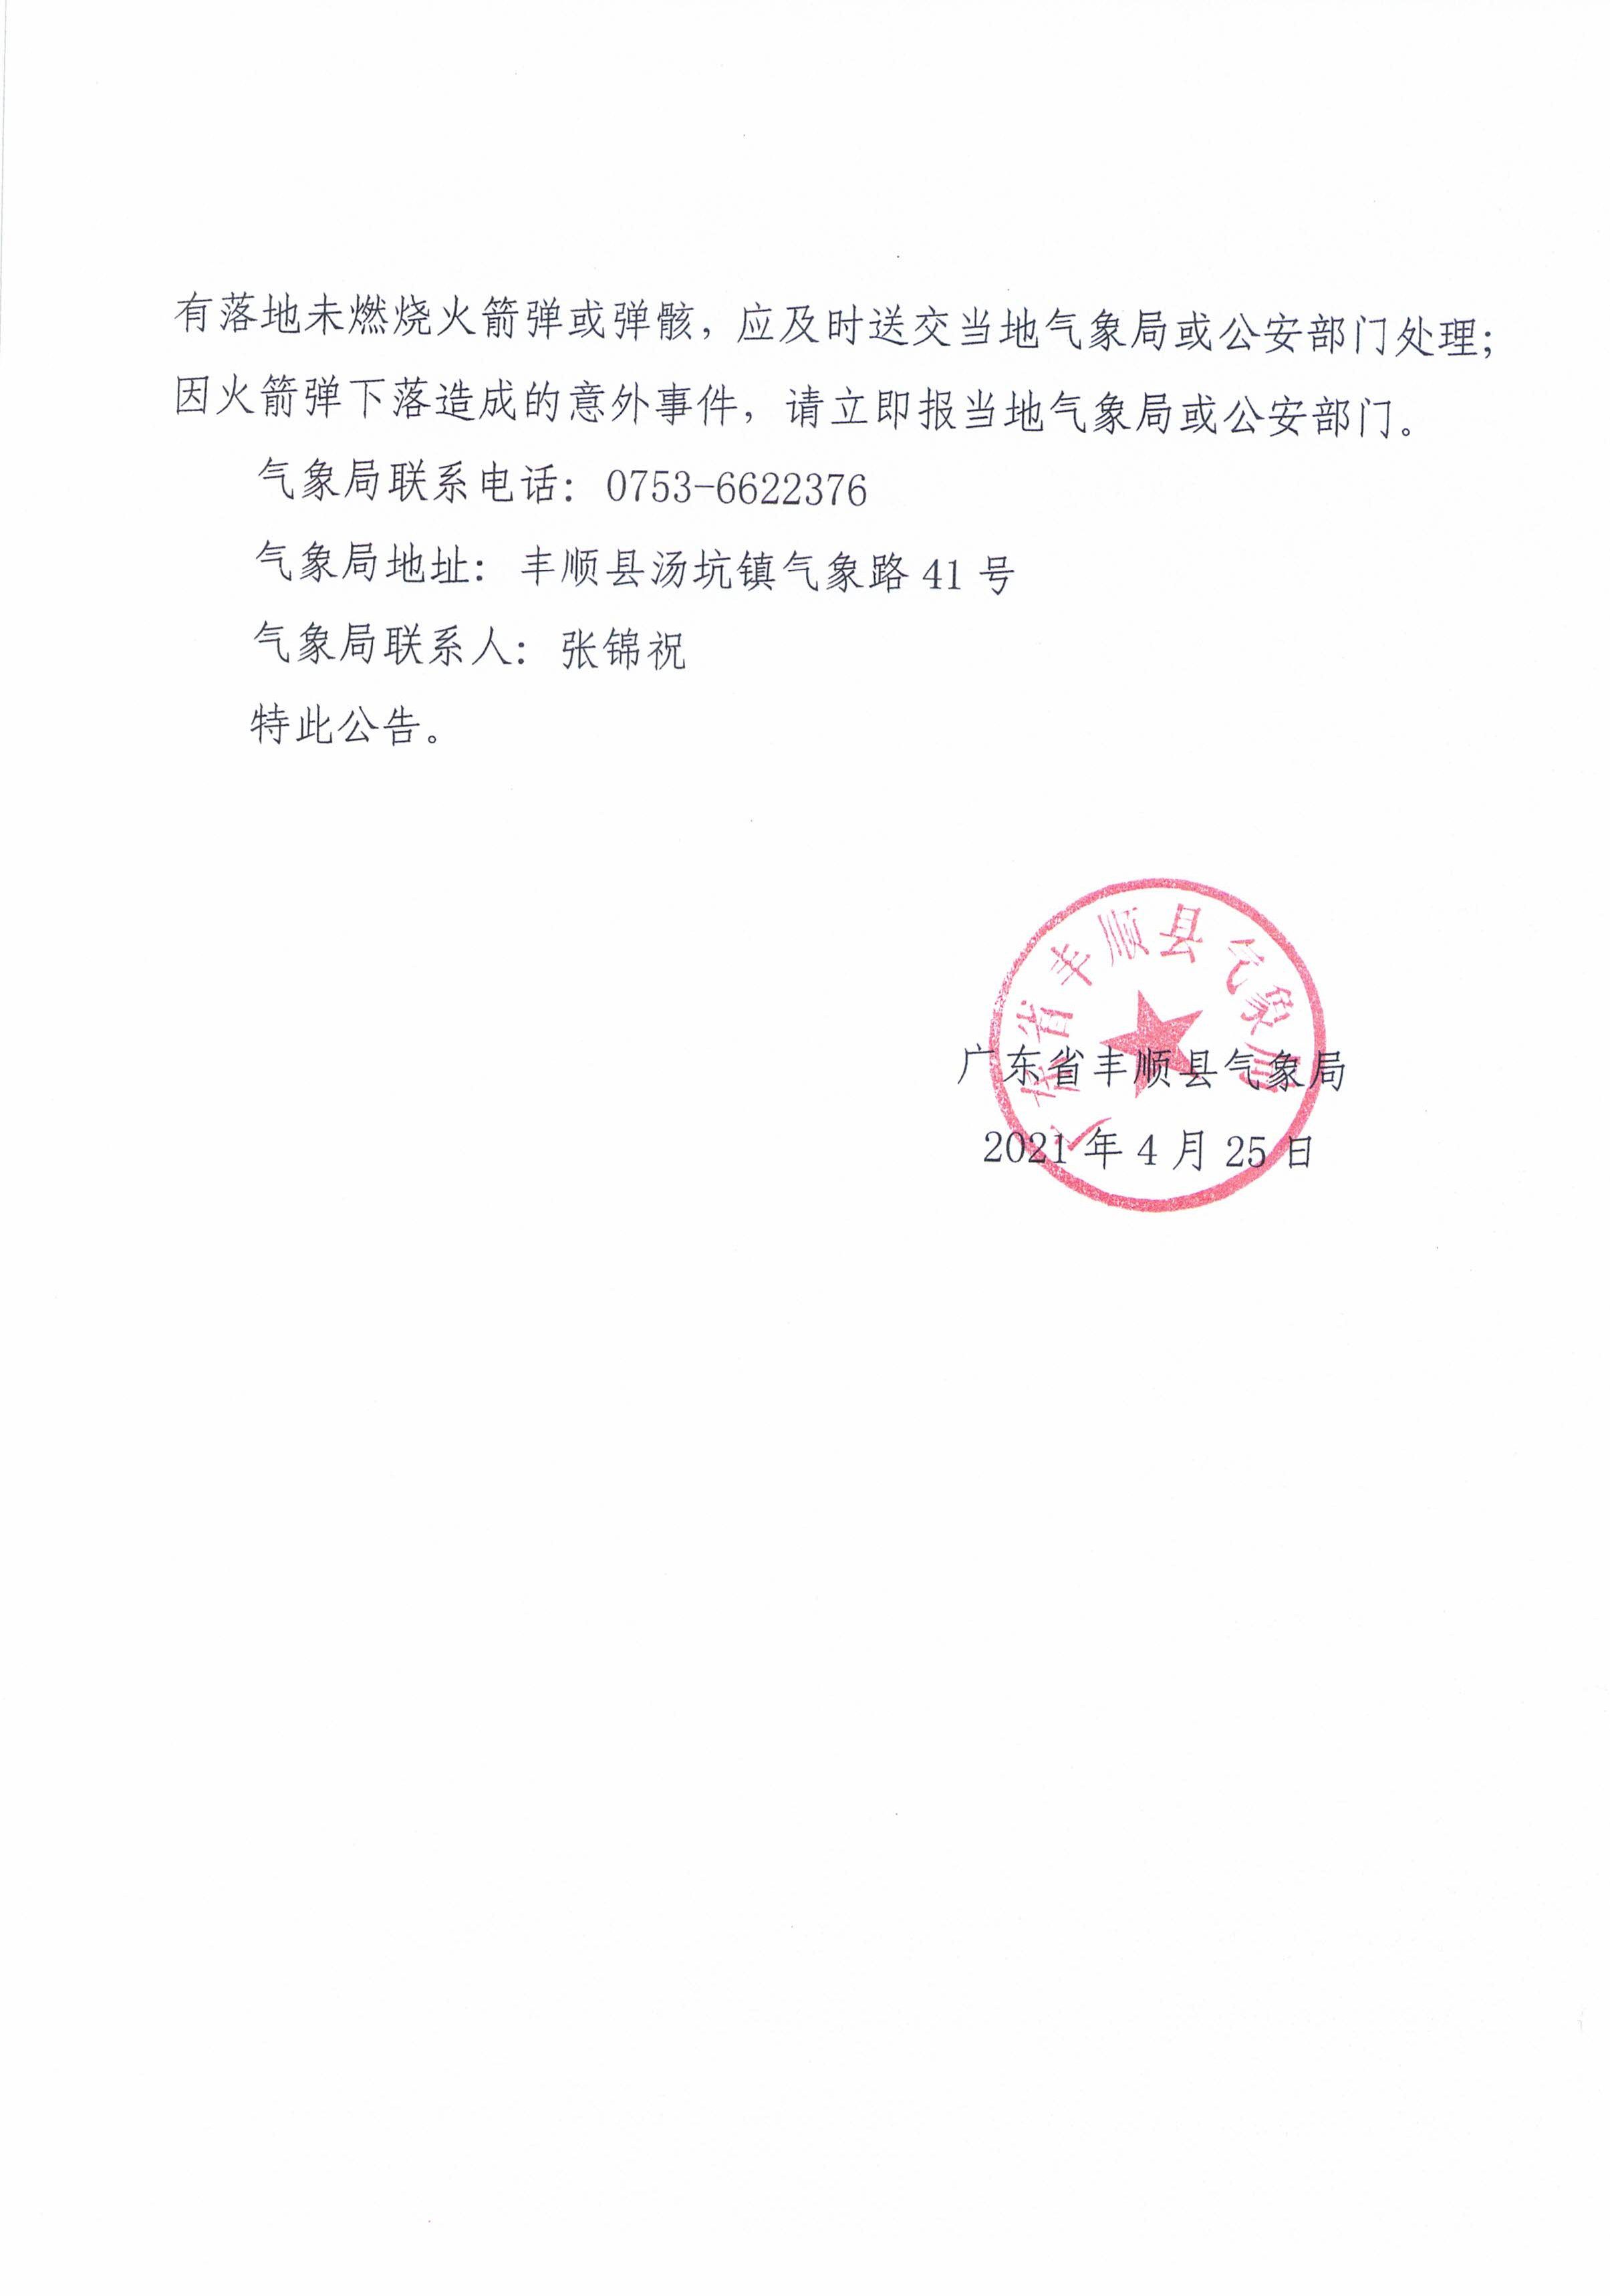 丰顺县人工影响天气作业公告（2021年度  第2期）_页面_2.png